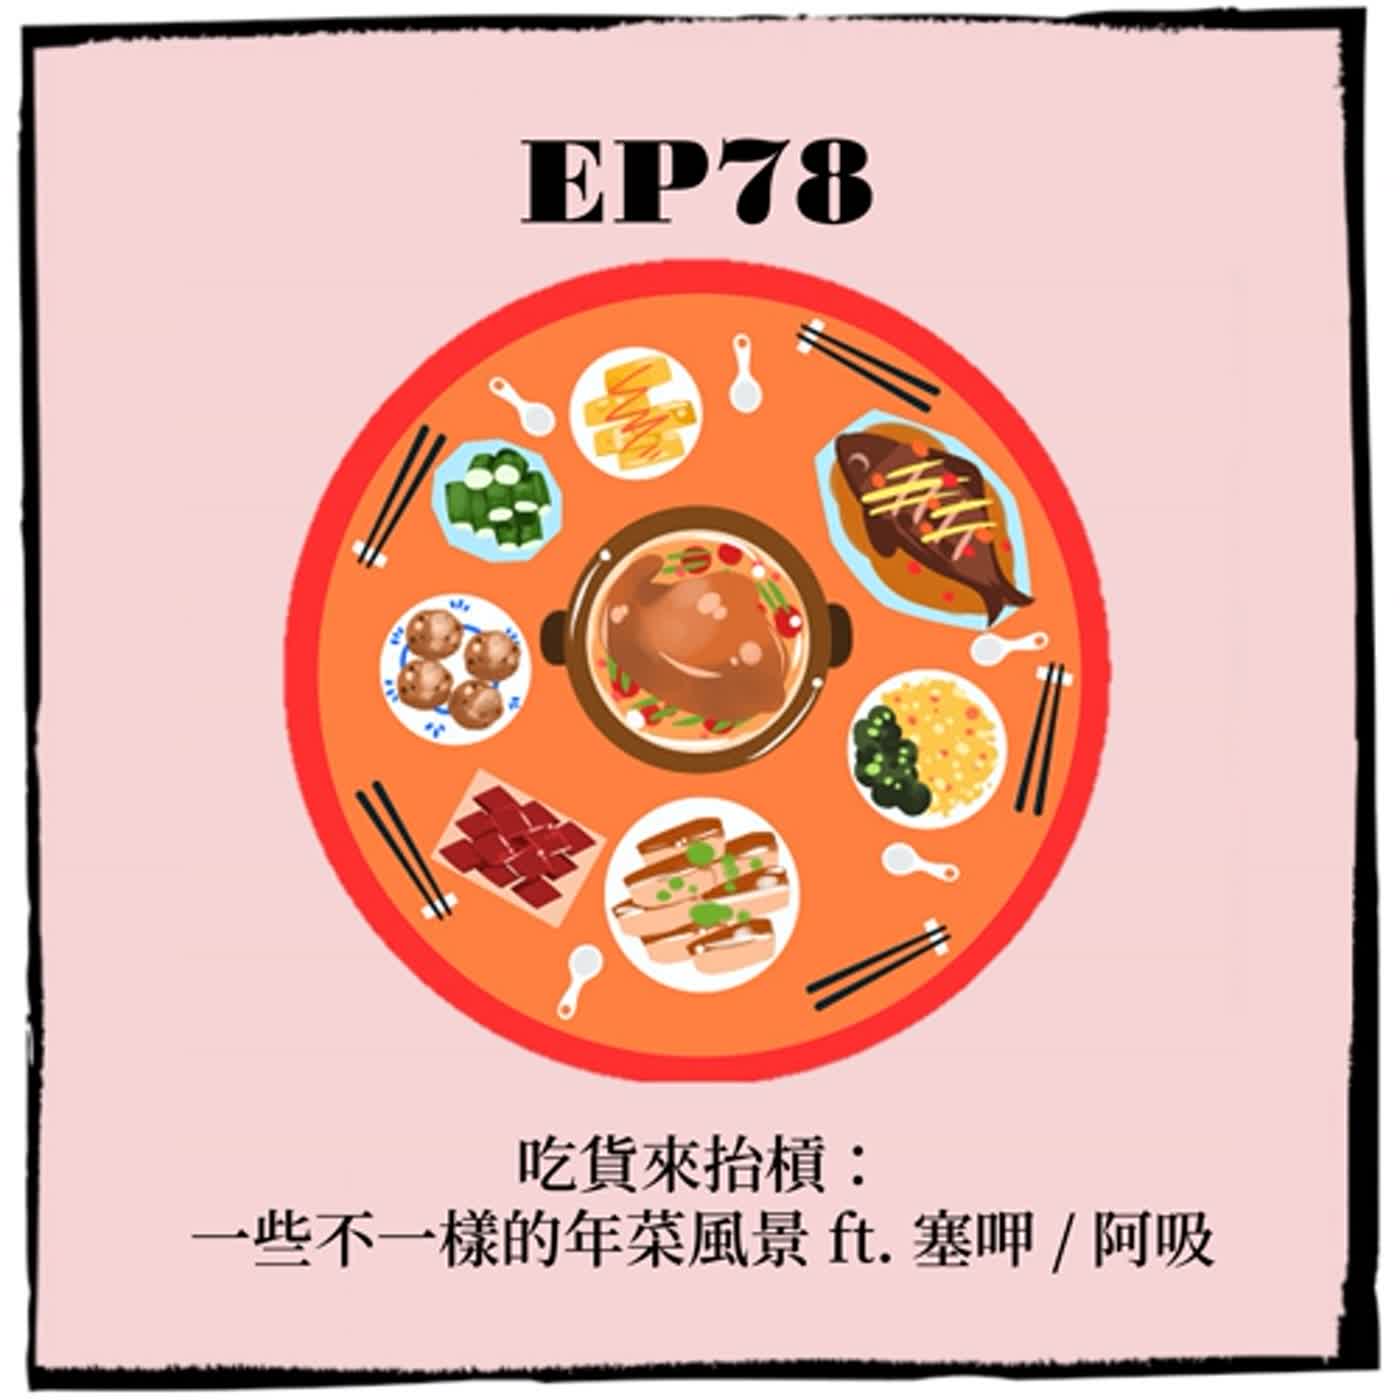 EP78 ｜吃貨來抬槓：一些不一樣的年菜風景  ft. 塞呷 / 阿吸